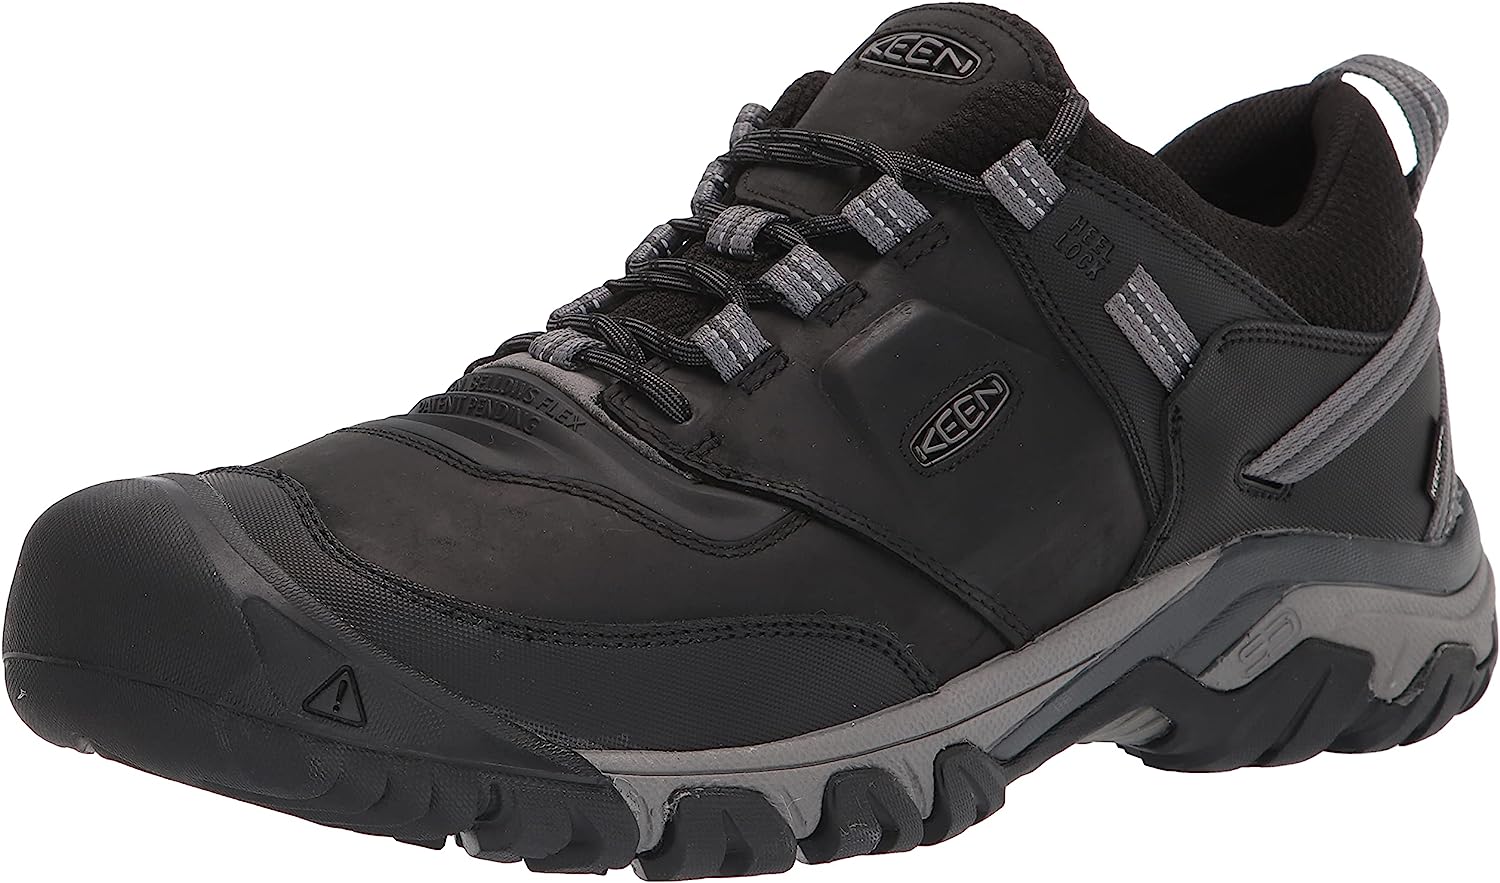 KEEN Men's Ridge Flex Low Height Waterproof Hiking Boots